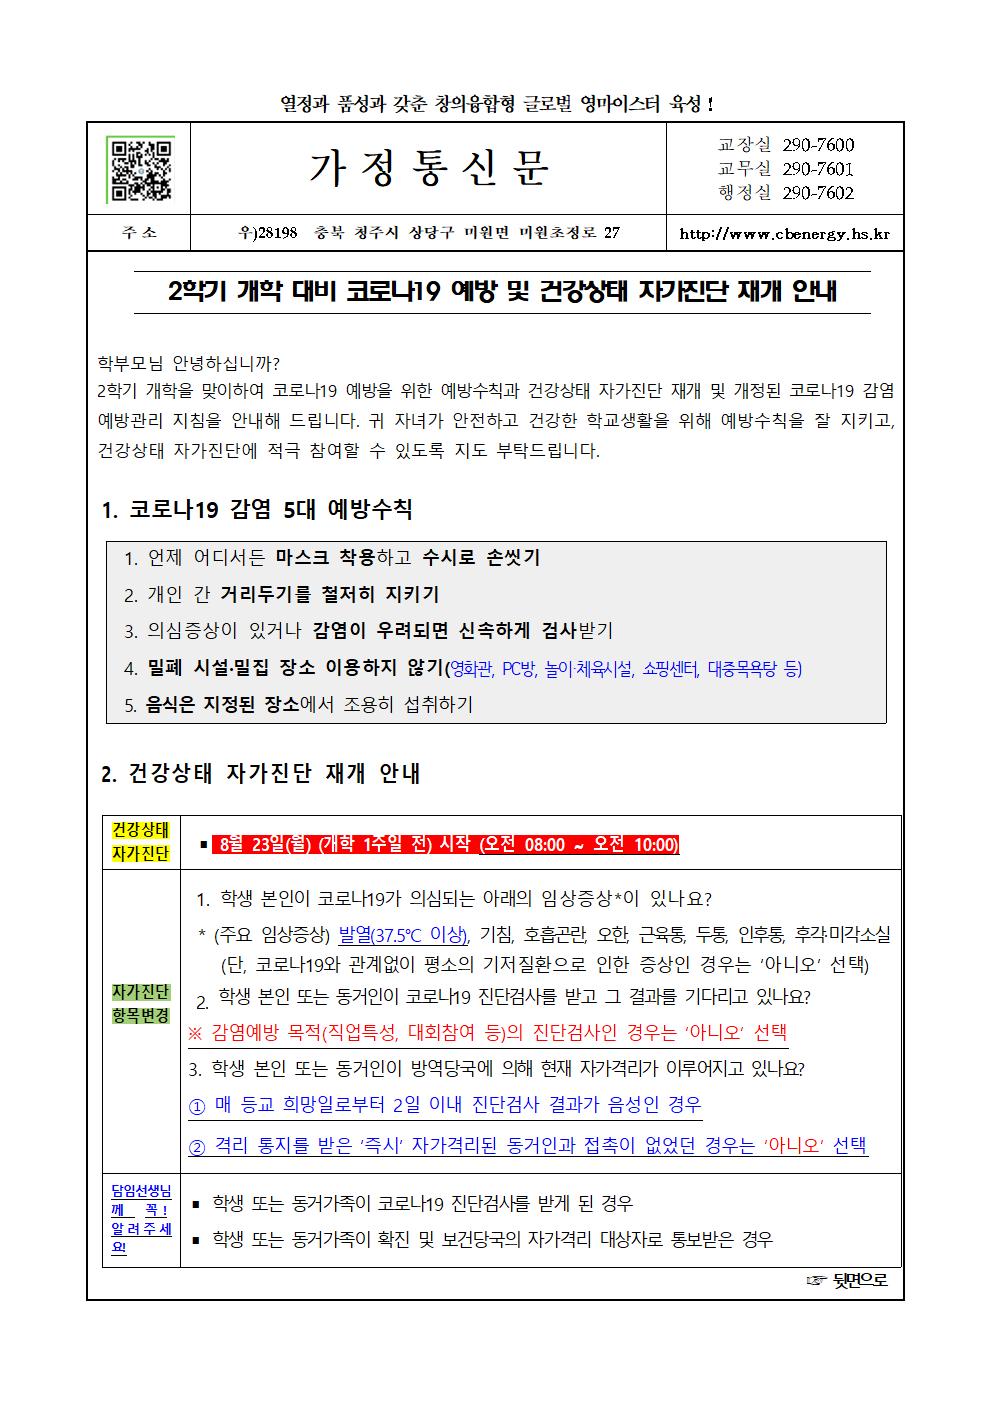 2학기 코로나19 예방 및 건강상태 자가진단 재개 가정통신문001